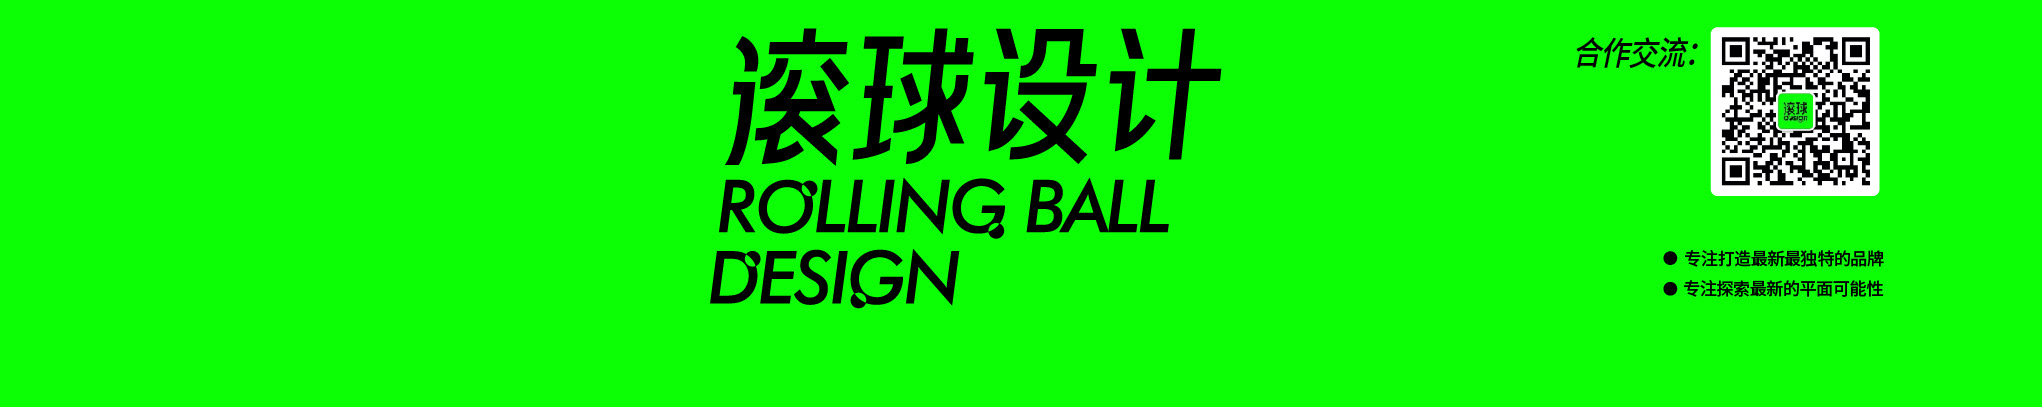 滚球设计 RBD DESIGN 的個人檔案橫幅